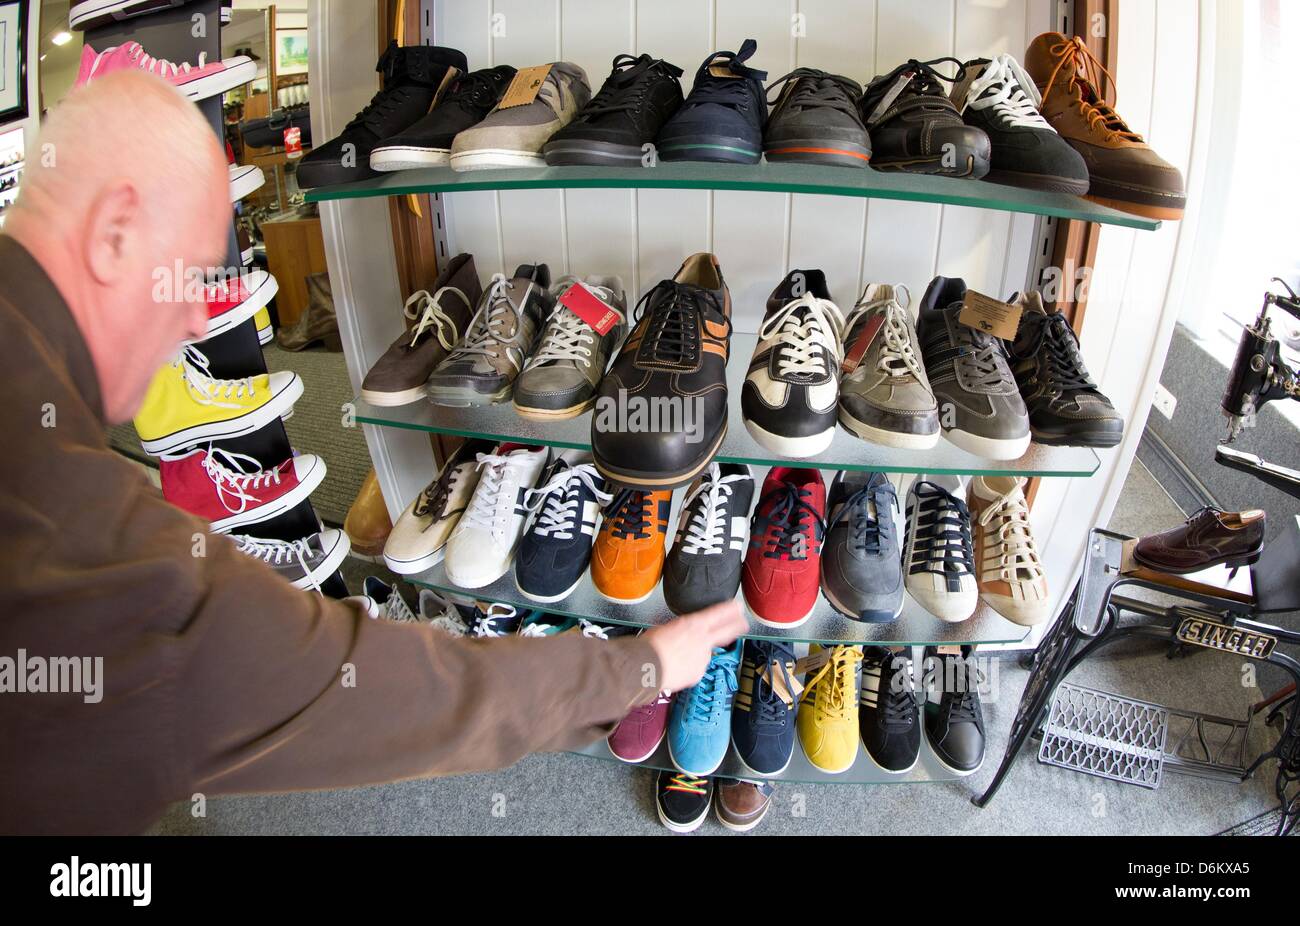 Calzolaio Georg Wessels luoghi grandi scarpe da uomo su un ripiano nel suo  negozio in Vreden, Germania, 15 aprile 2013. Wessels produce calzature per  persone con grandi taglie in tutto il mondo.